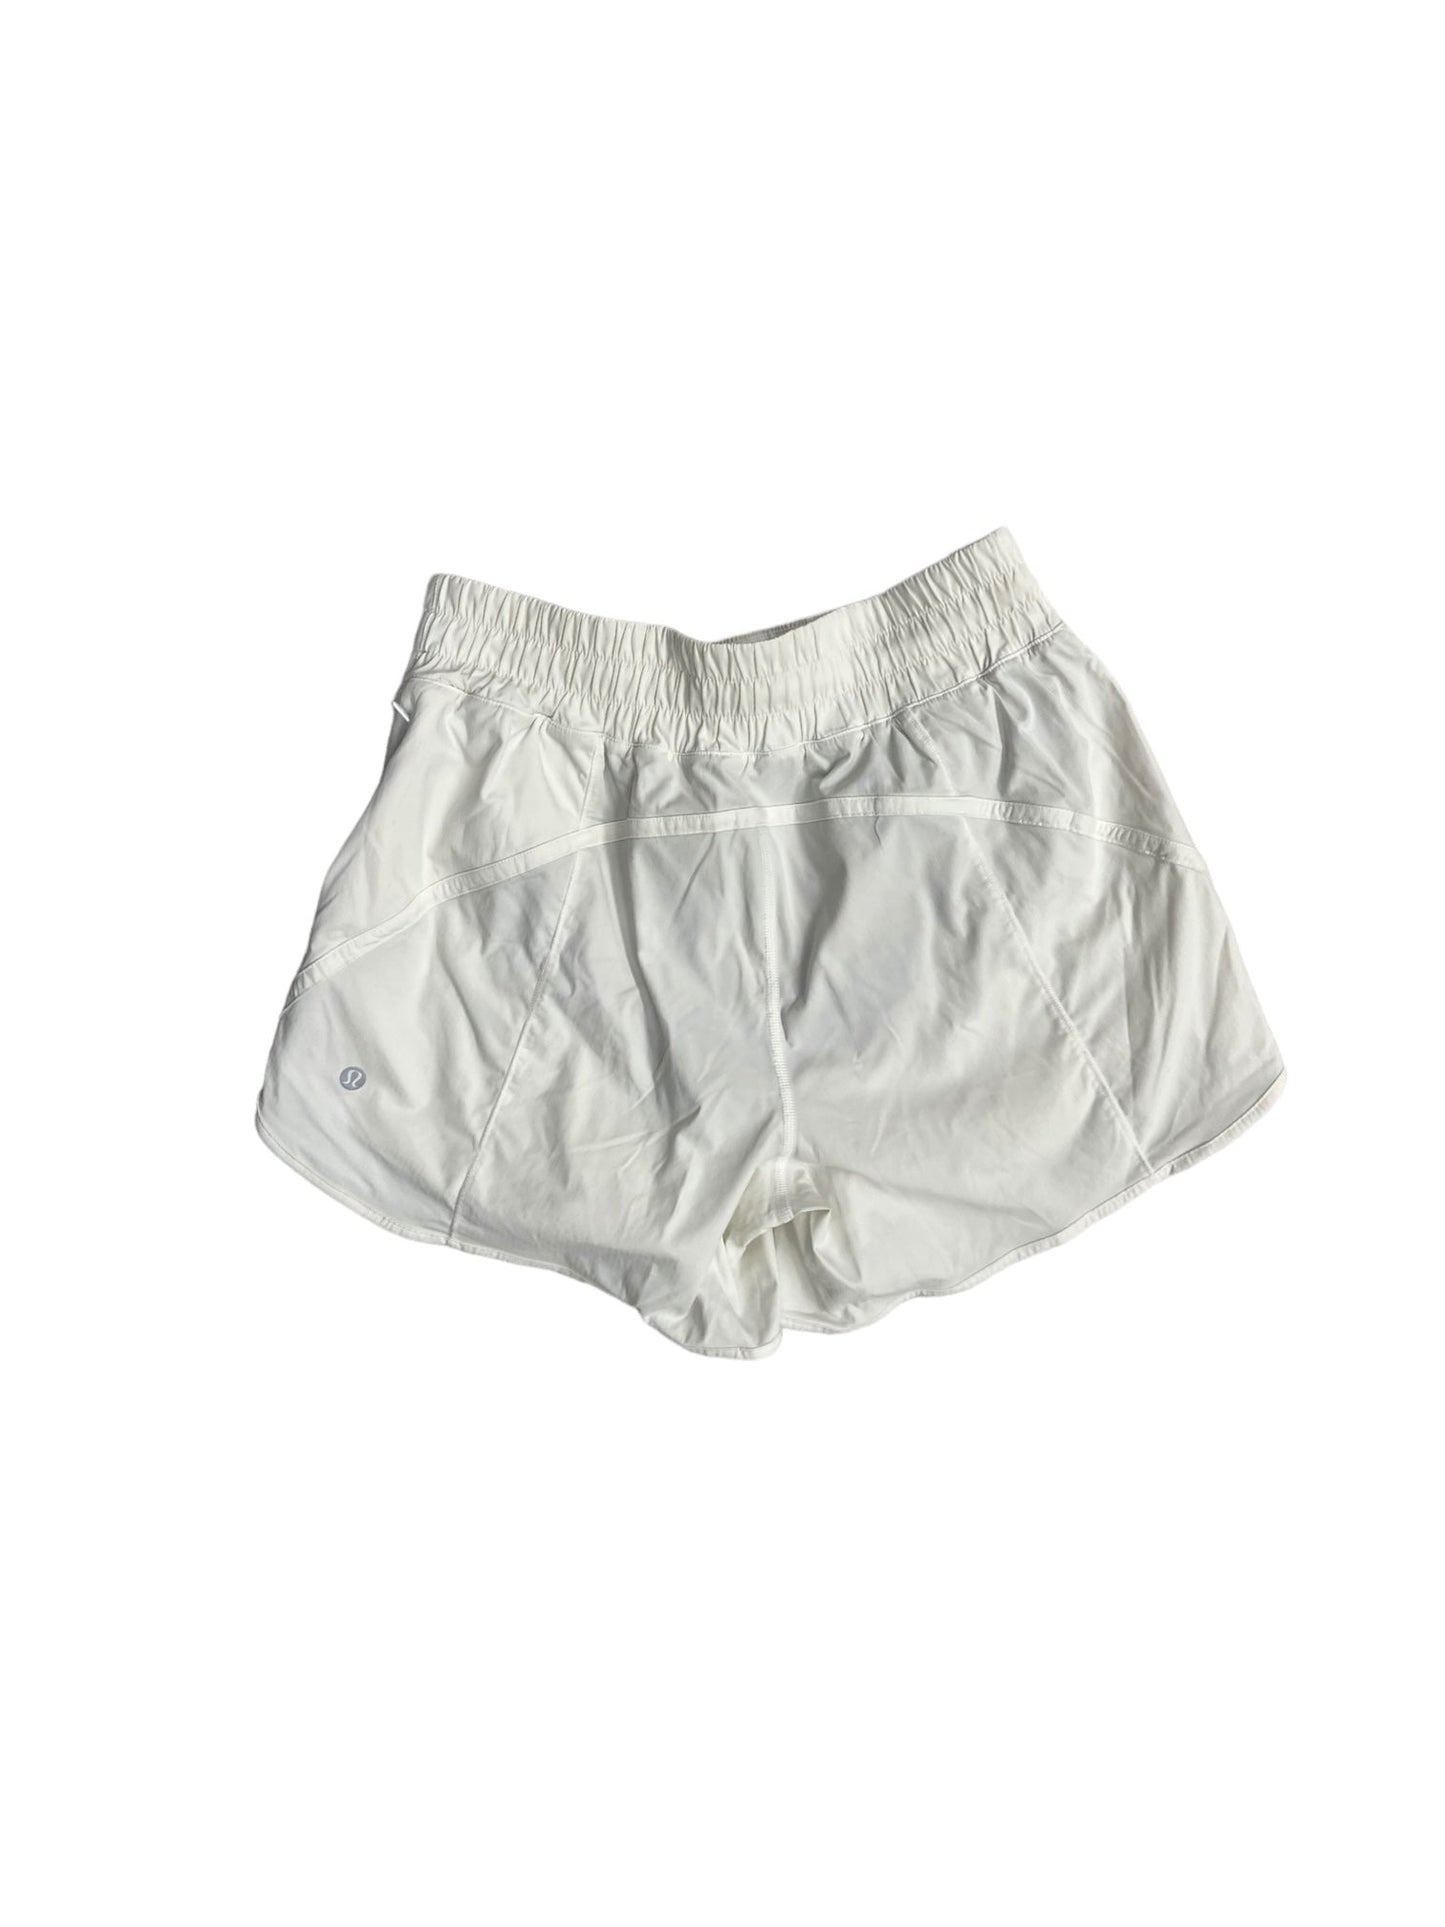 White Athletic Shorts Lululemon, Size 8